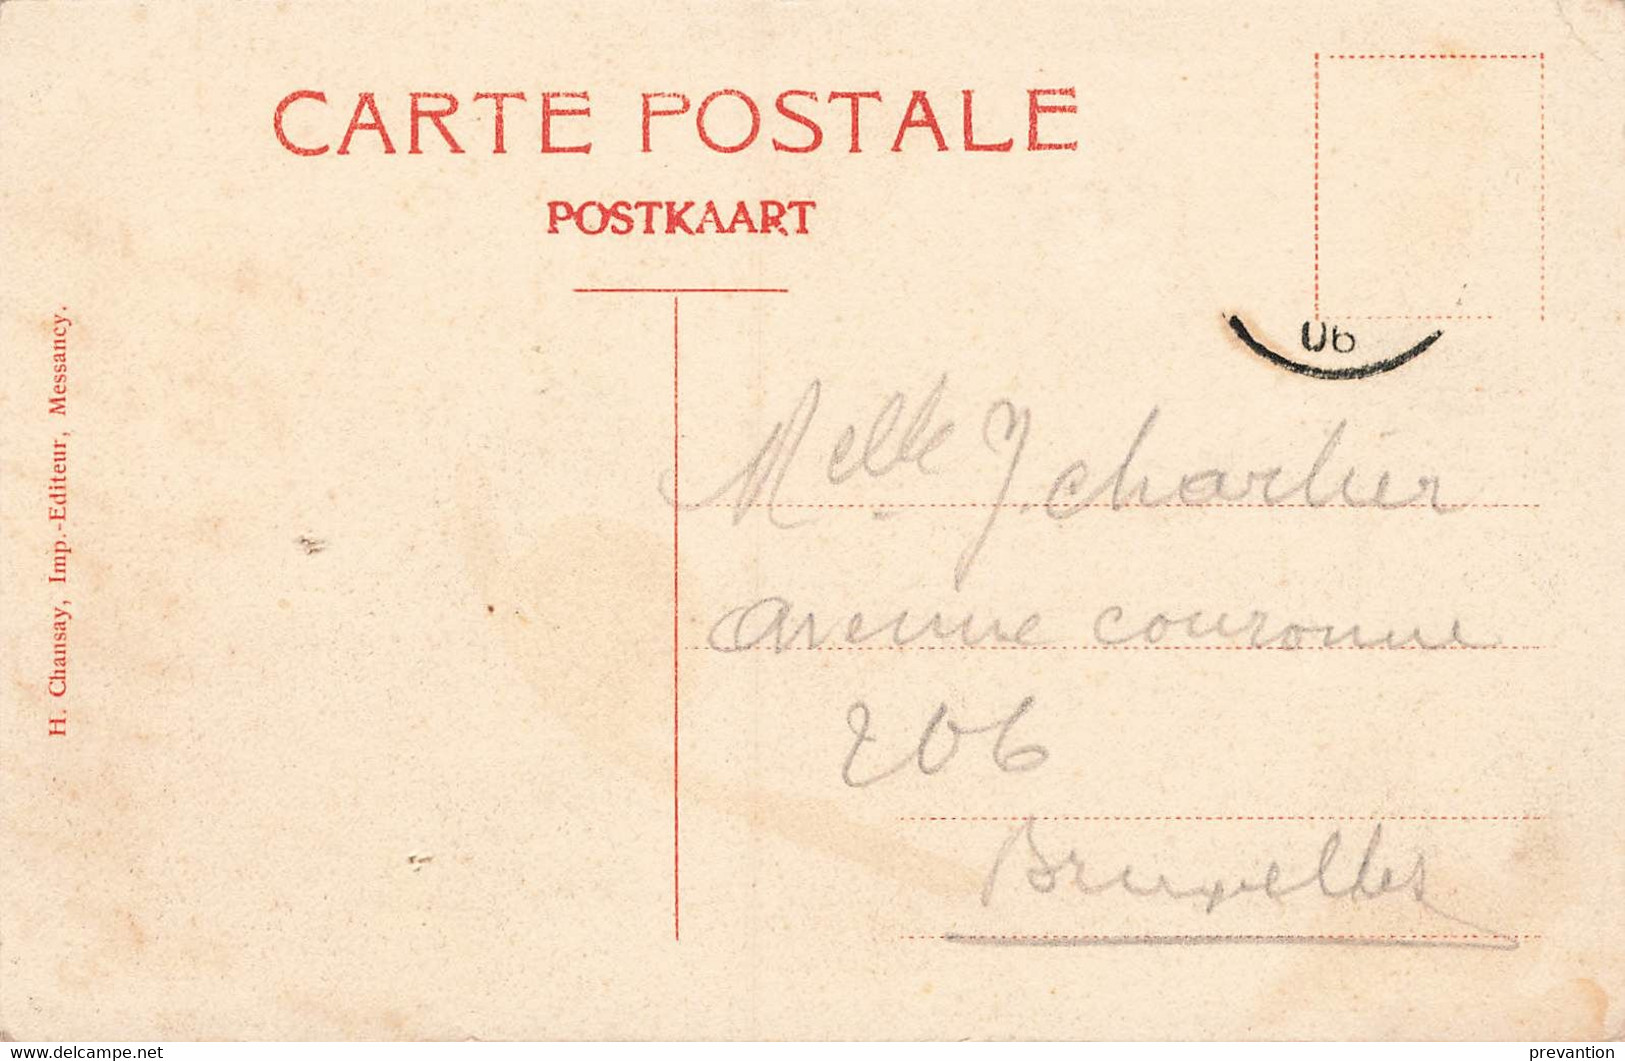 MESSANCY - Côté D'Hart - Carte Circulé En 1906 - Messancy